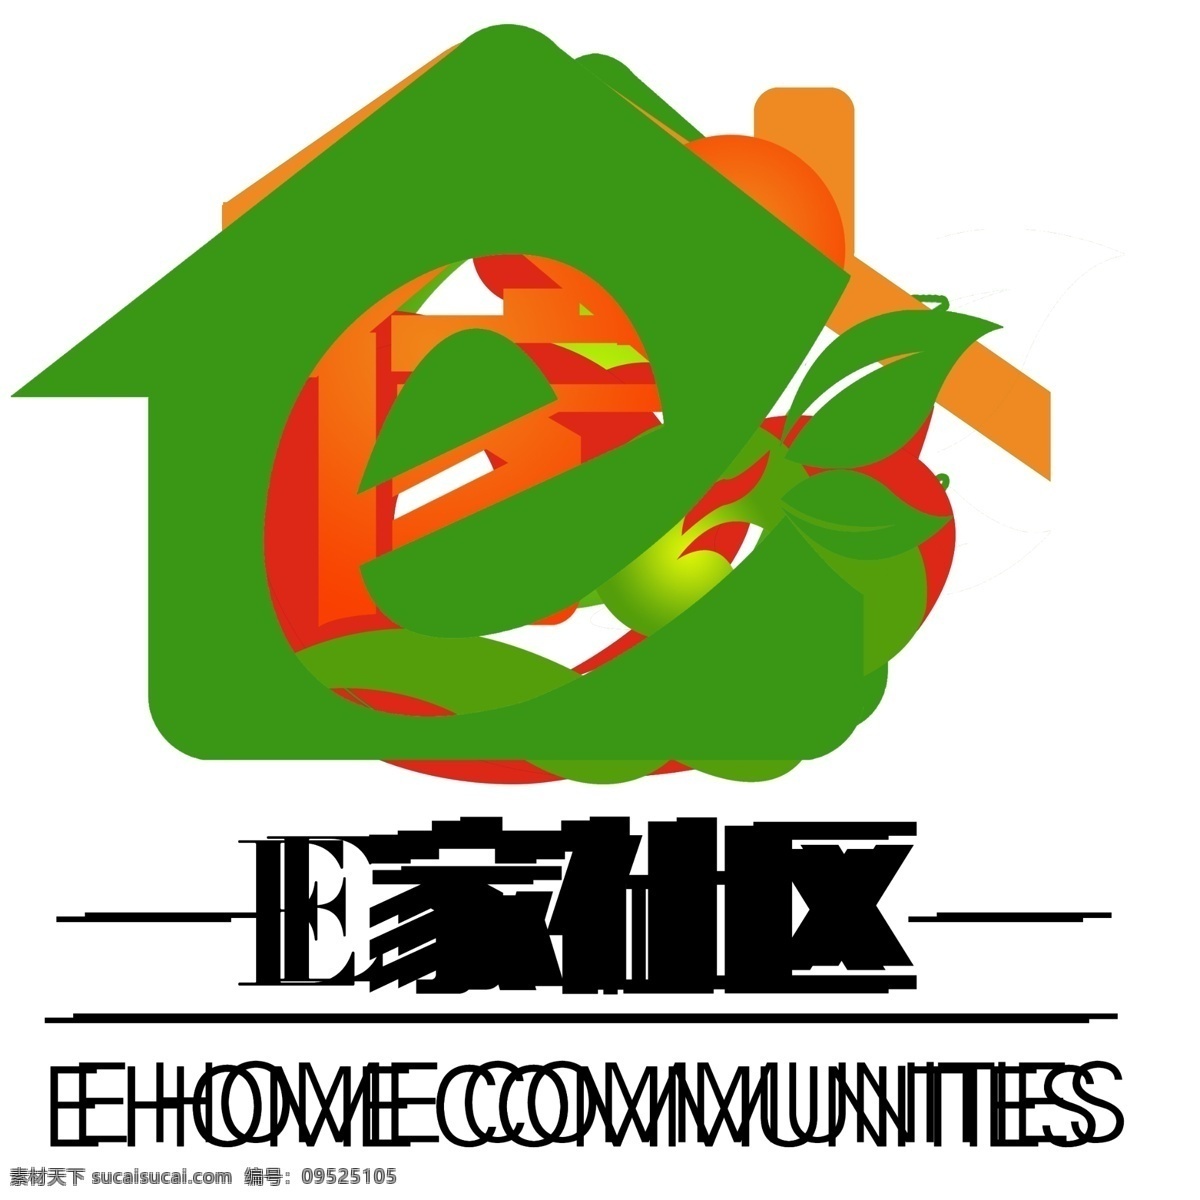 e 家 社区 logo e家社区 社区logo 居委会爱心 房子 叶子 logo设计